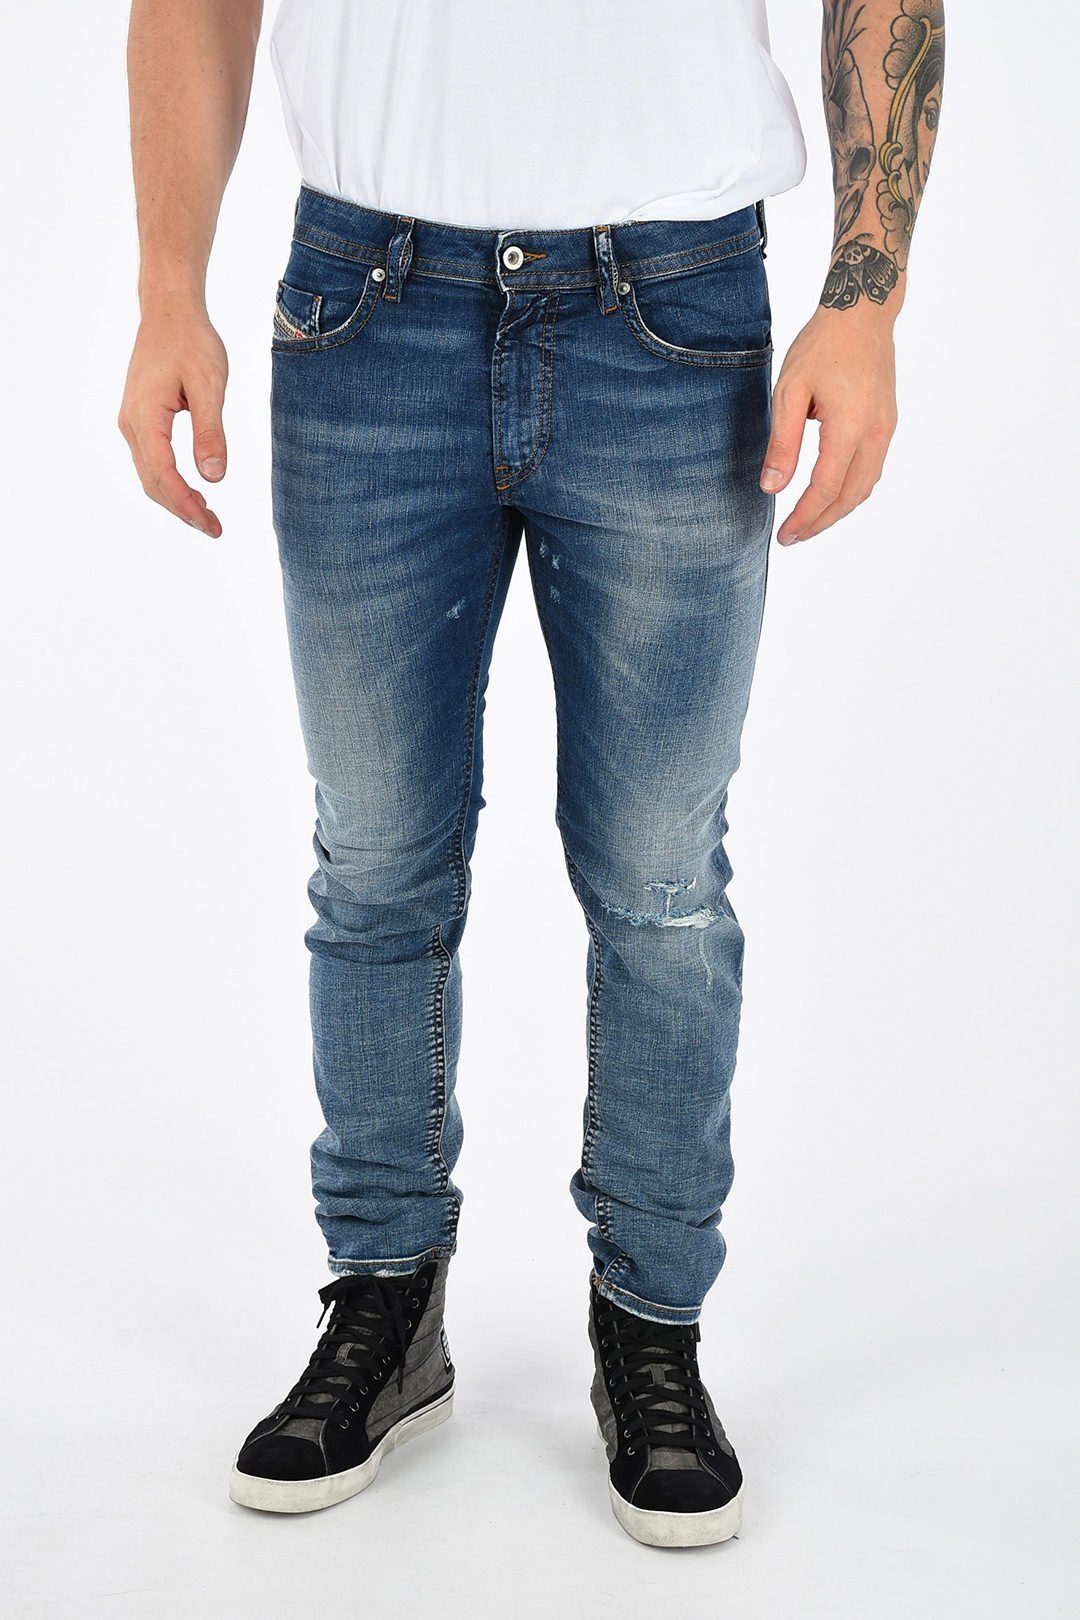 Diesel Slim-fit-Jeans Herren Thommer 084TW Blau, Röhrenjeans, Stretch, 5-Pocket-Style, Vintage Used-Look, Длина: L32